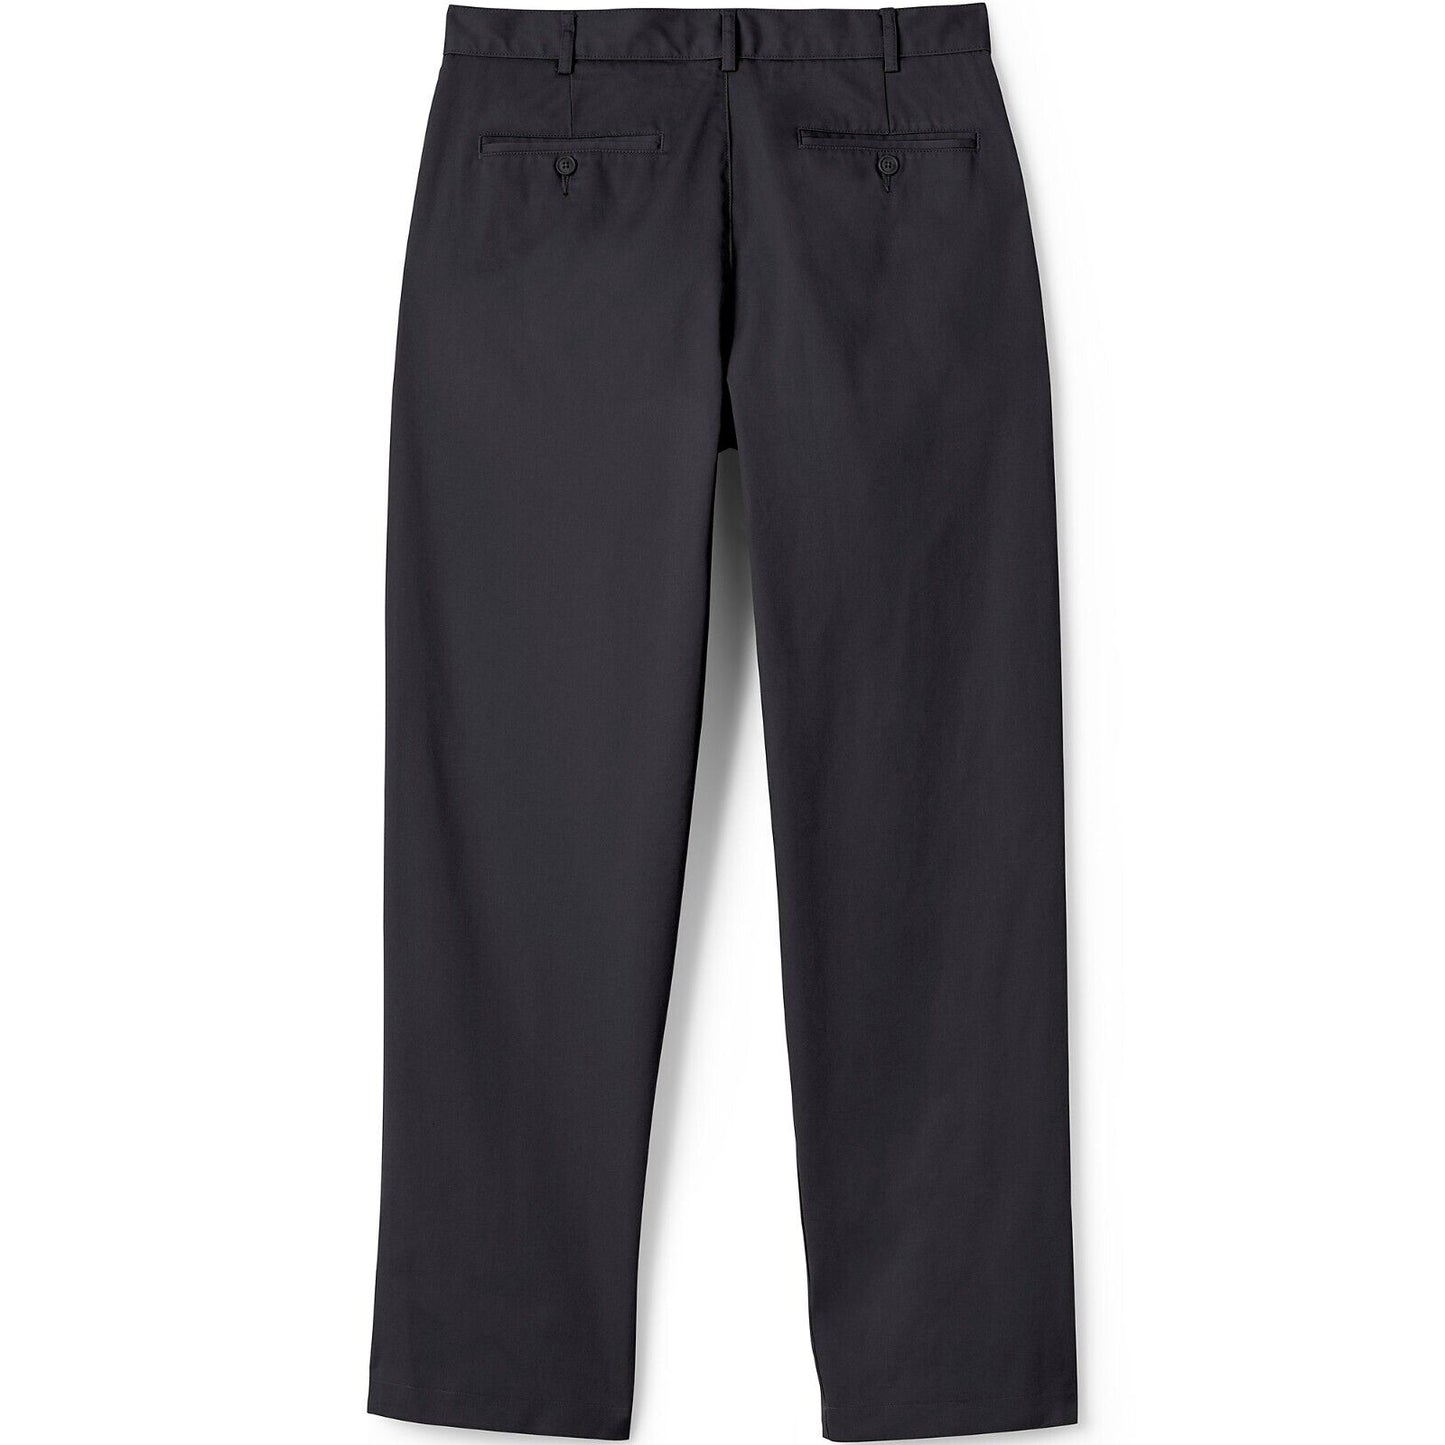 Men's Blend Plain Front Chino Pants size 30